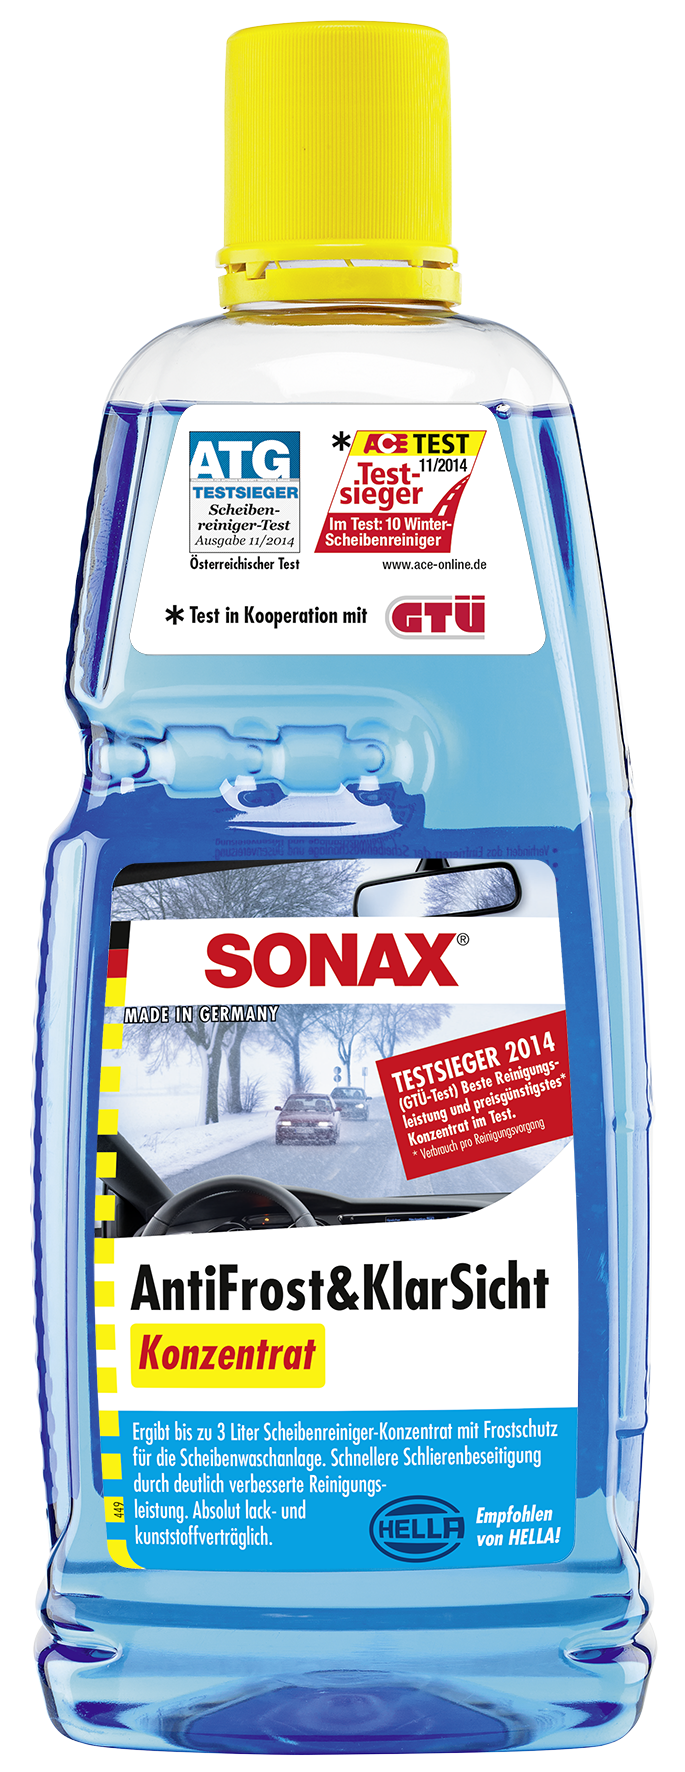 Sonax Antifrost & Klarsicht Konzentrat 5l 